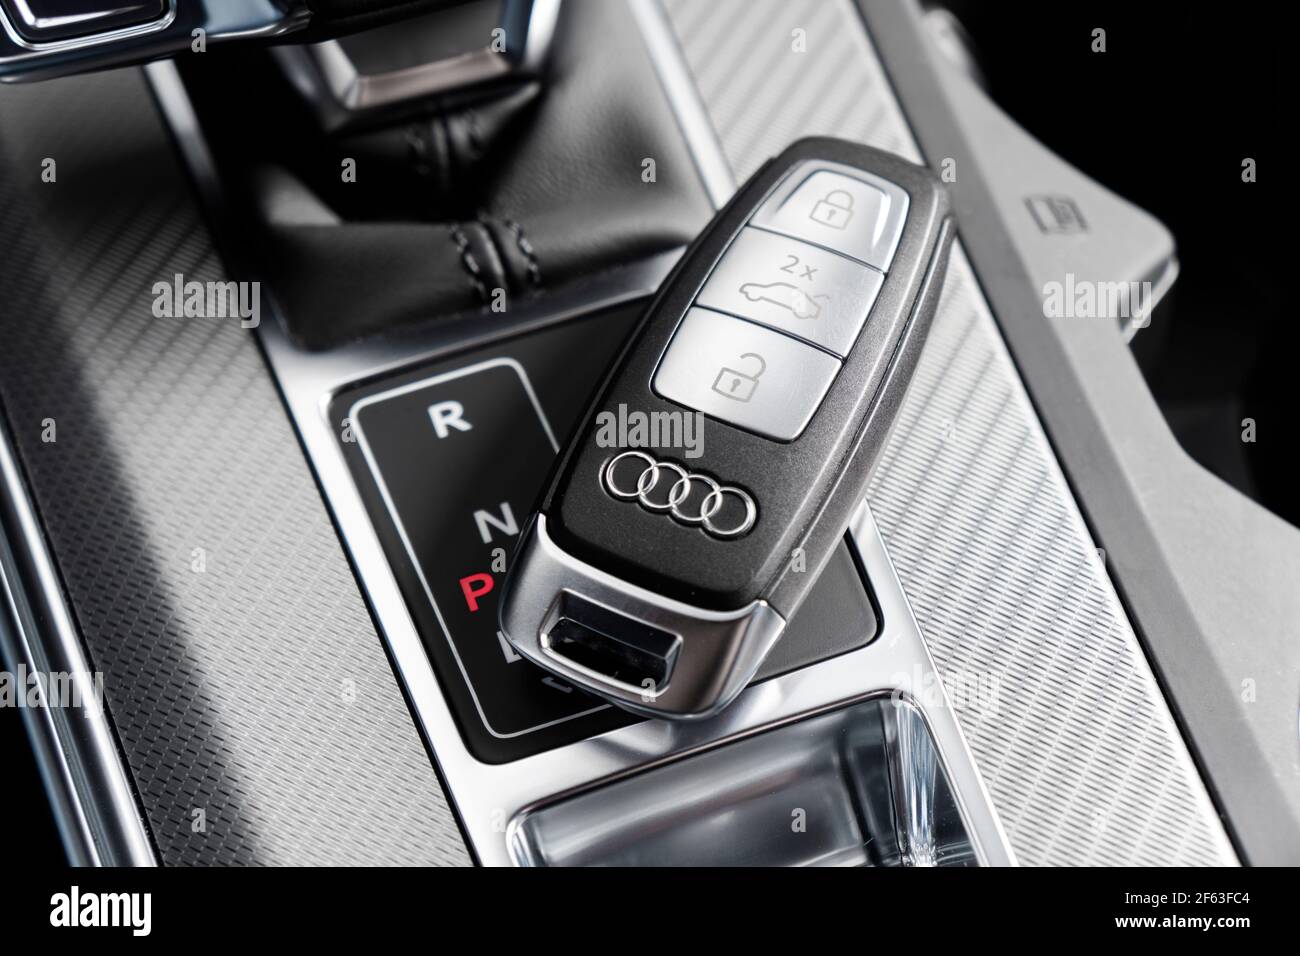 Sankt-Petersburg, Russie, 25 mars 2021 : gros plan des clés de voiture Audi A6 dans un intérieur en cuir noir d'une voiture moderne. Détails de l'intérieur de l'Audi A6 S-Line. Banque D'Images